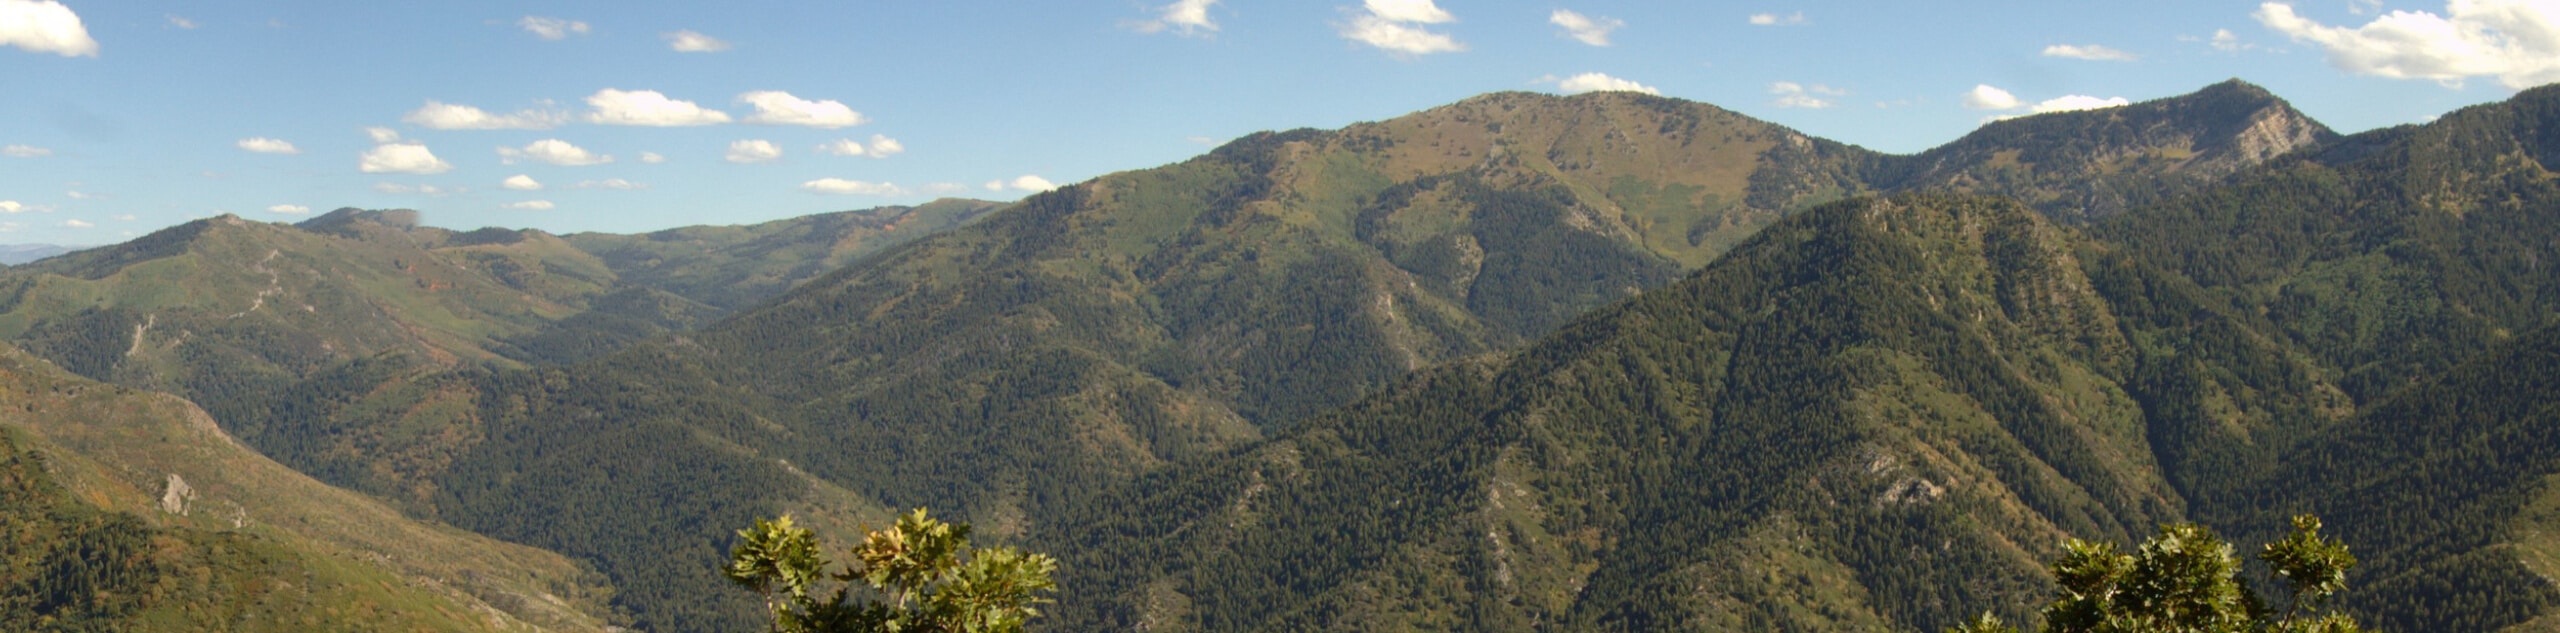 Grandeur Peak Trail- West Face